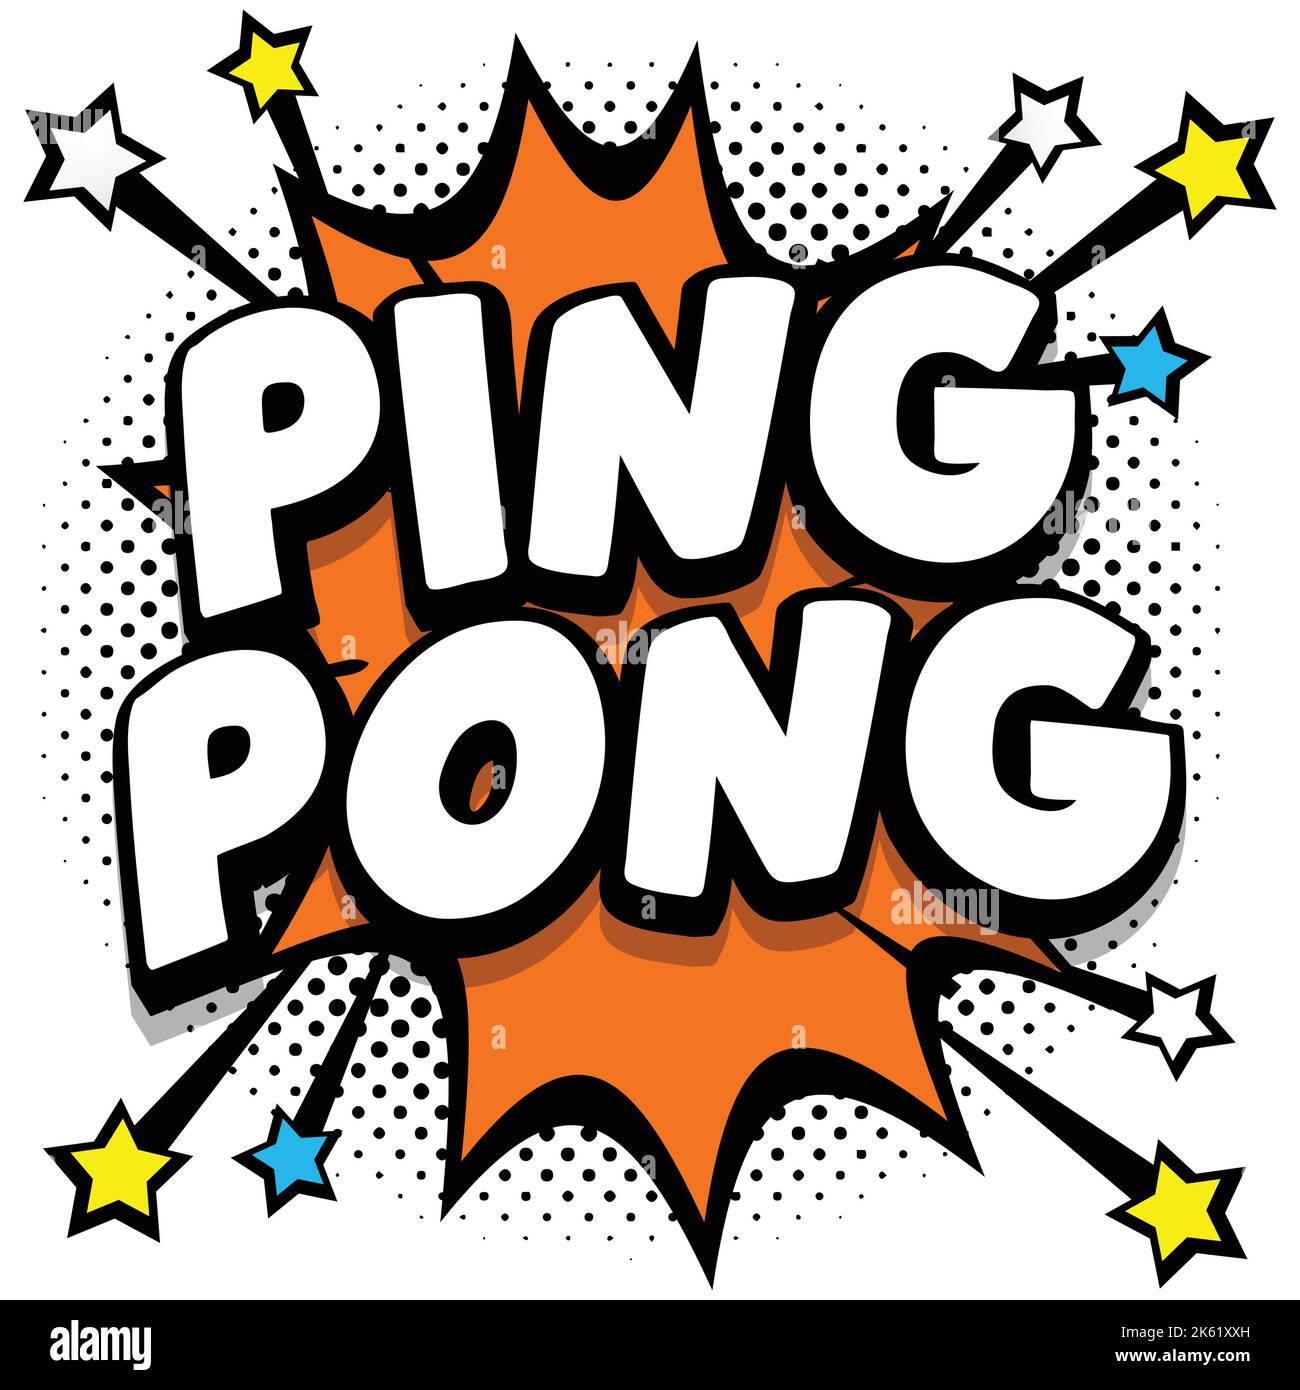 Ping pong Pop art fumetti fumetti fumetti fumetti fumetti fumetti fumetti  effetti sonori Vector Illustration Immagine e Vettoriale - Alamy